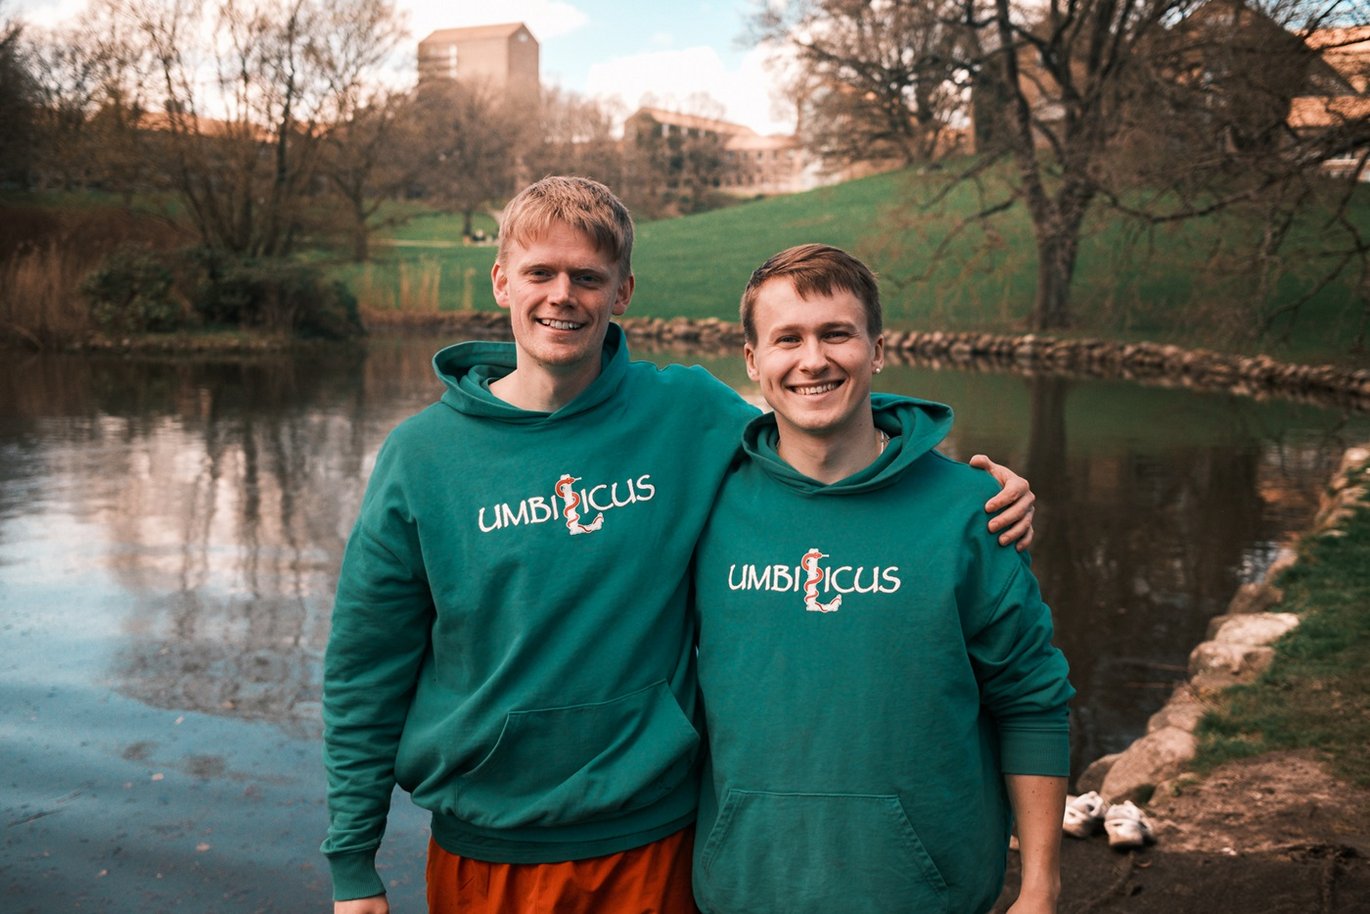 Daniel Teglborg Houe og Morten Wittendorf Bækby, begge iført en Umbilicus-hættetrøje, står foran søen i universitetsparken.